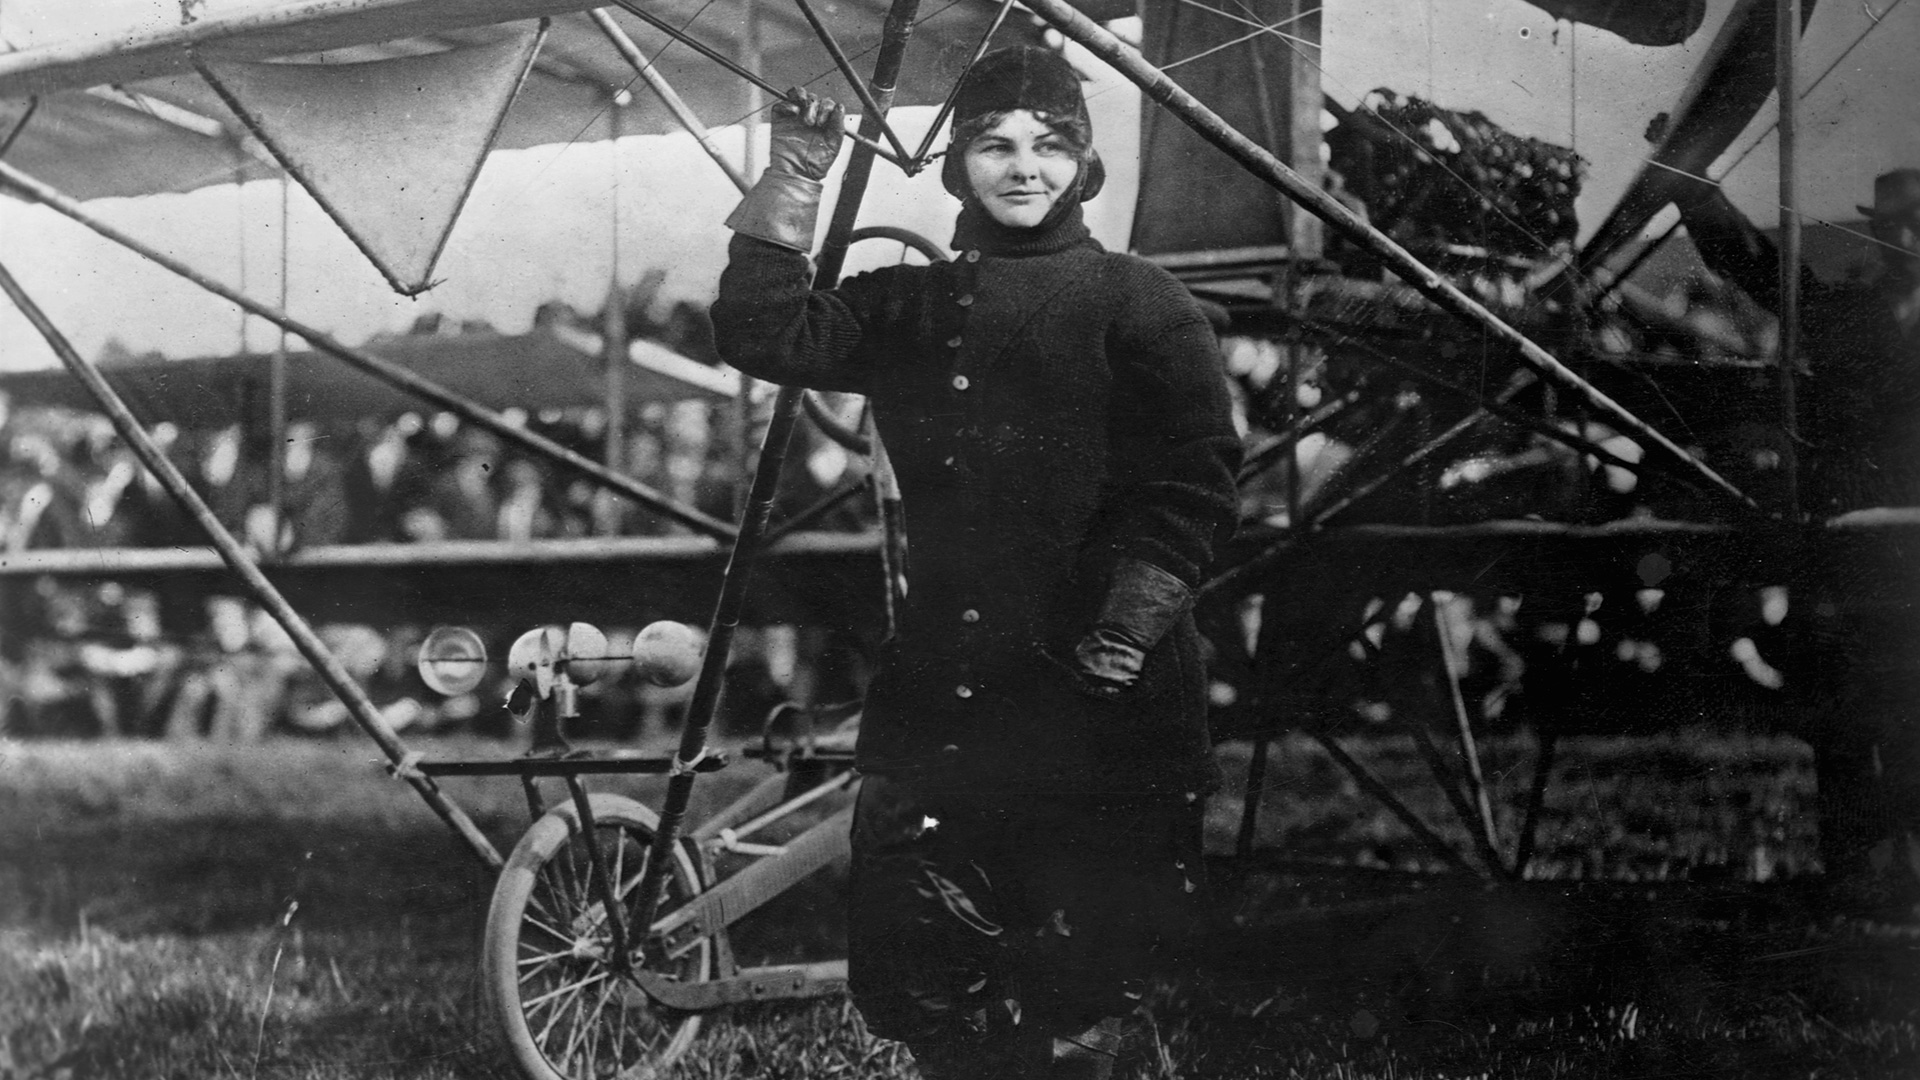 Women Who Soar: 30 Books About Boundary-Breaking Female Pilots